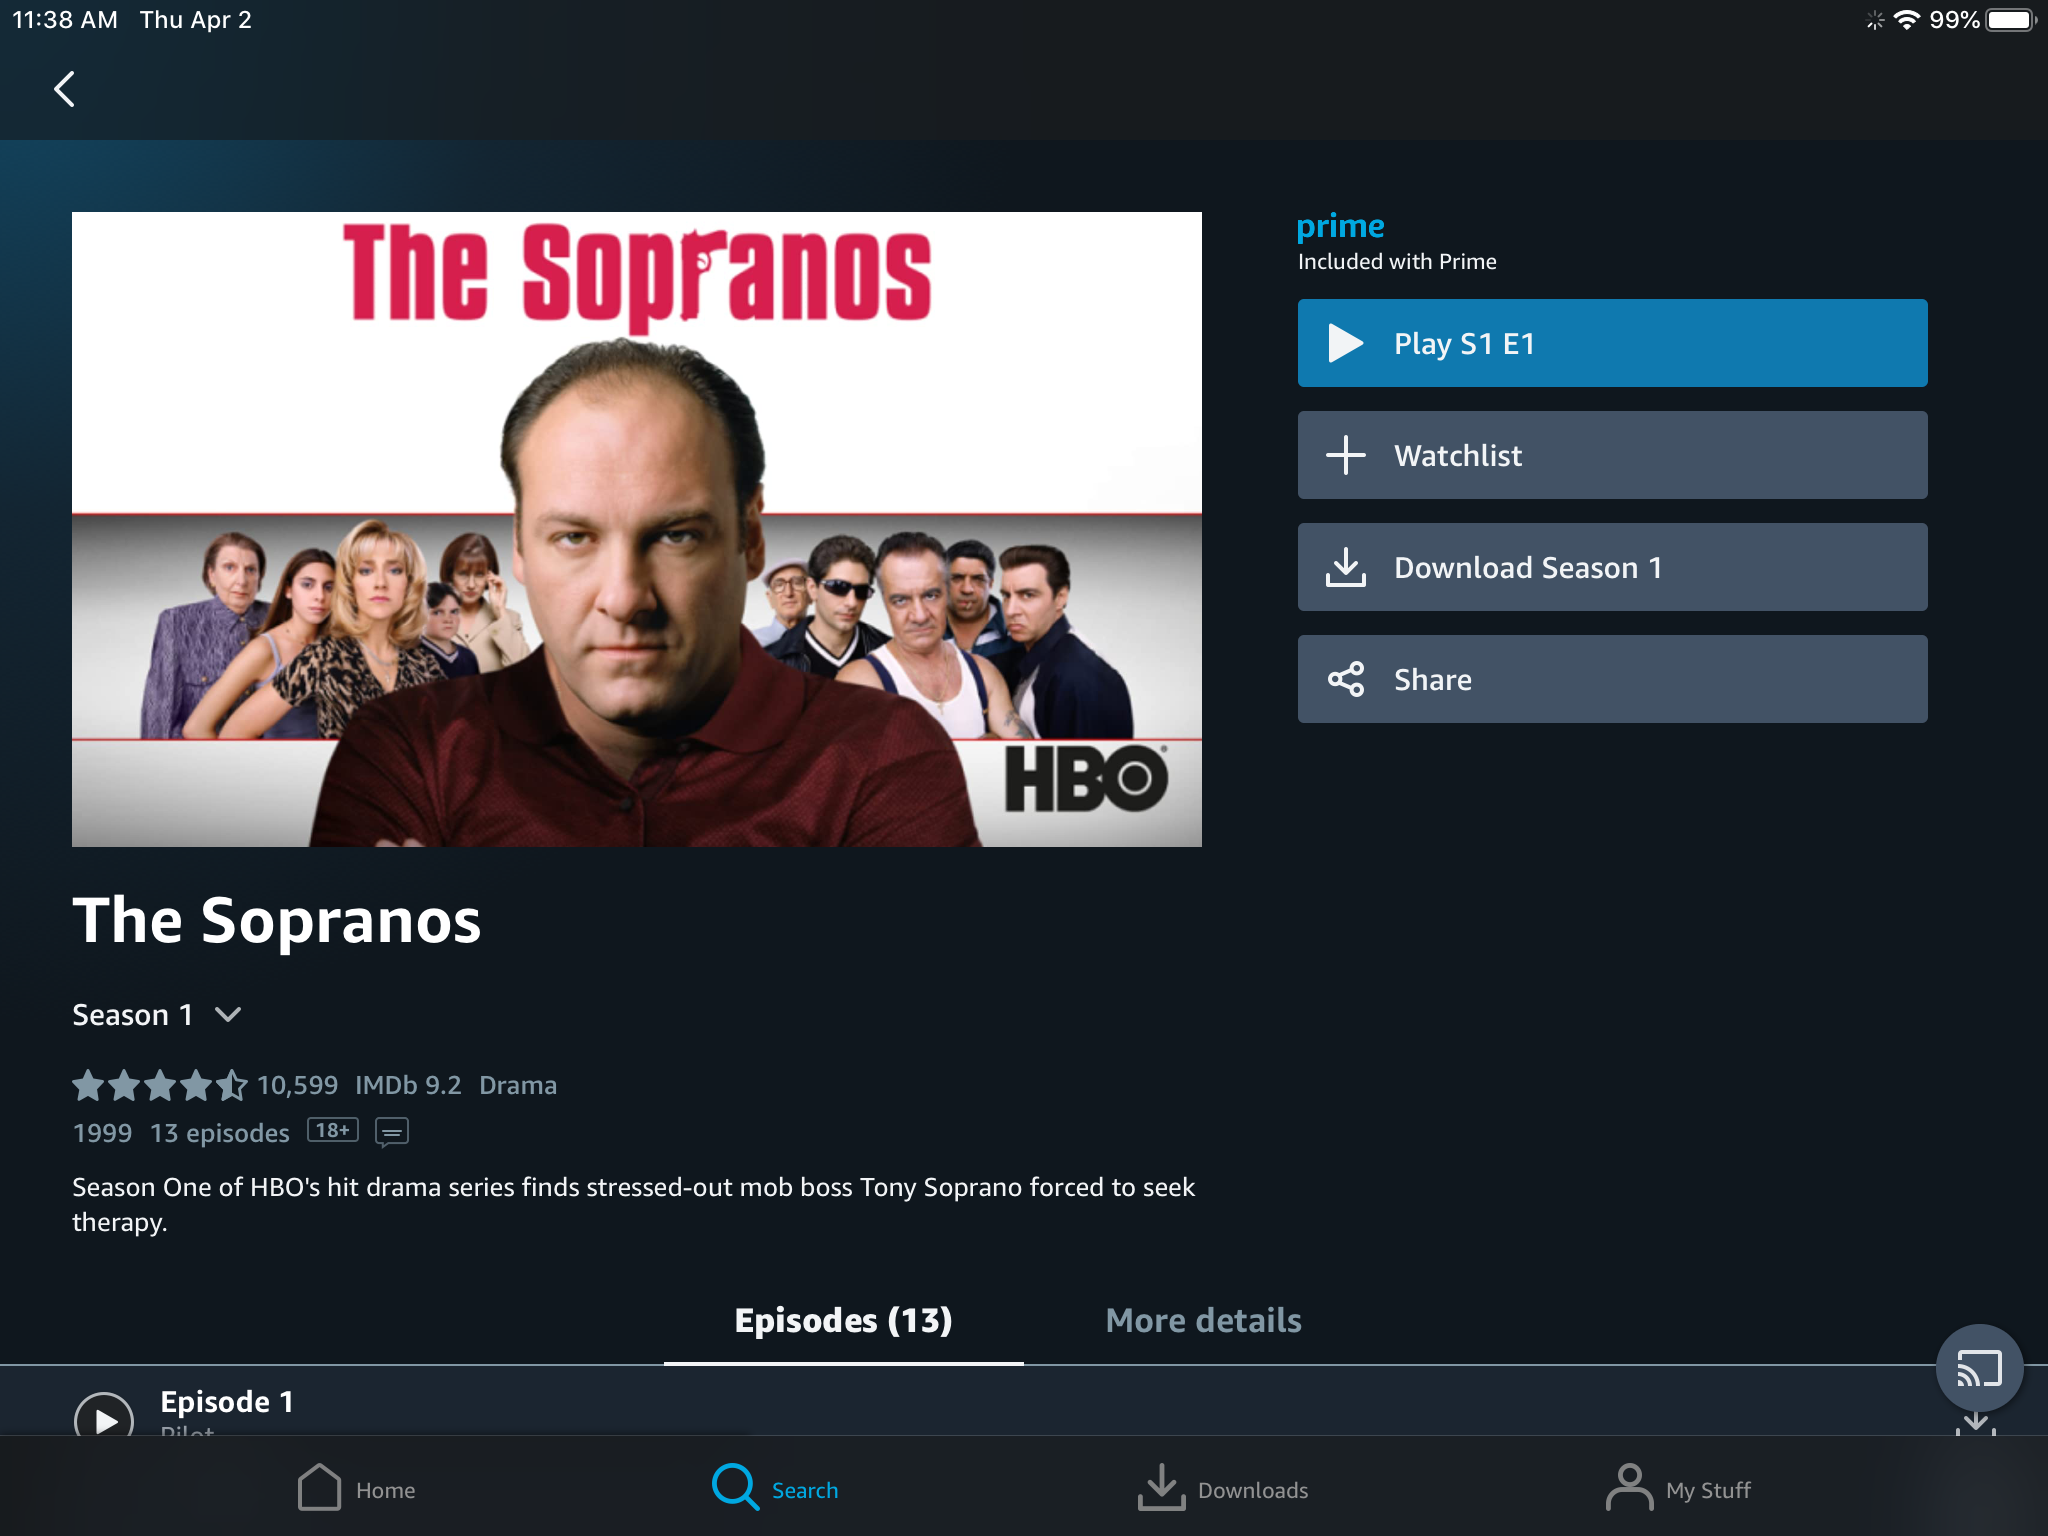 Descarga la primera temporada de Los Soprano en Amazon Video